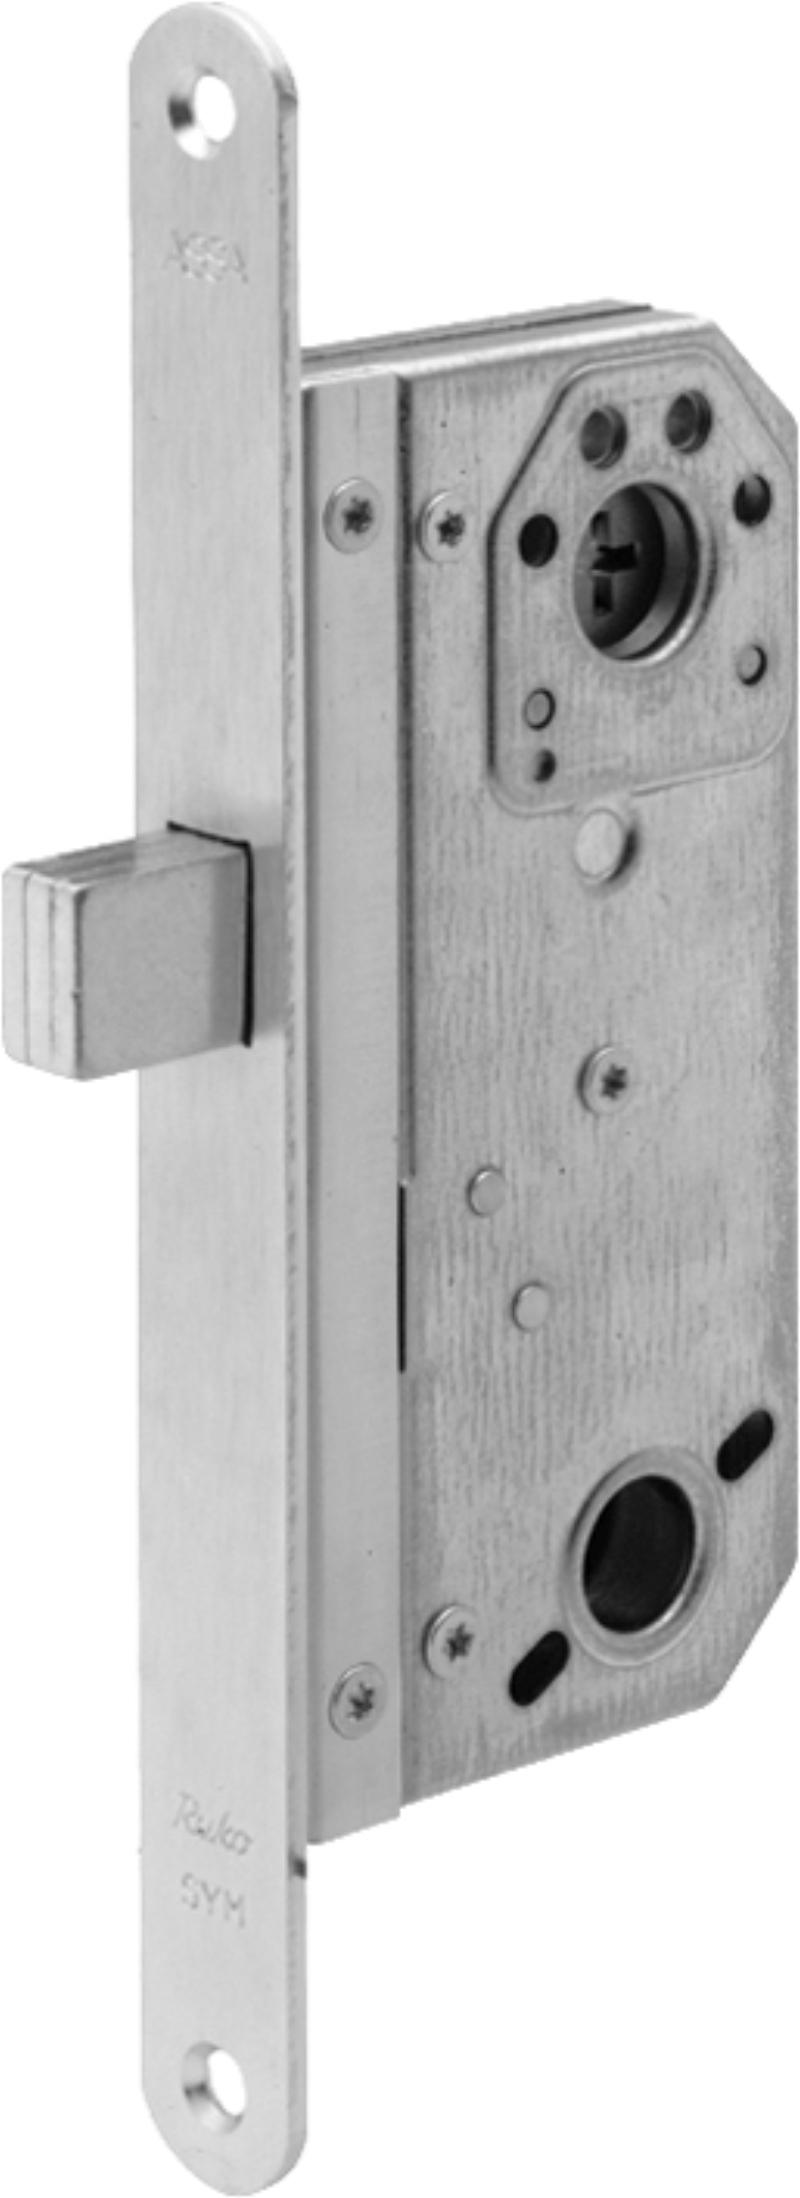 Assa locking box 9788 w/micro (521125)